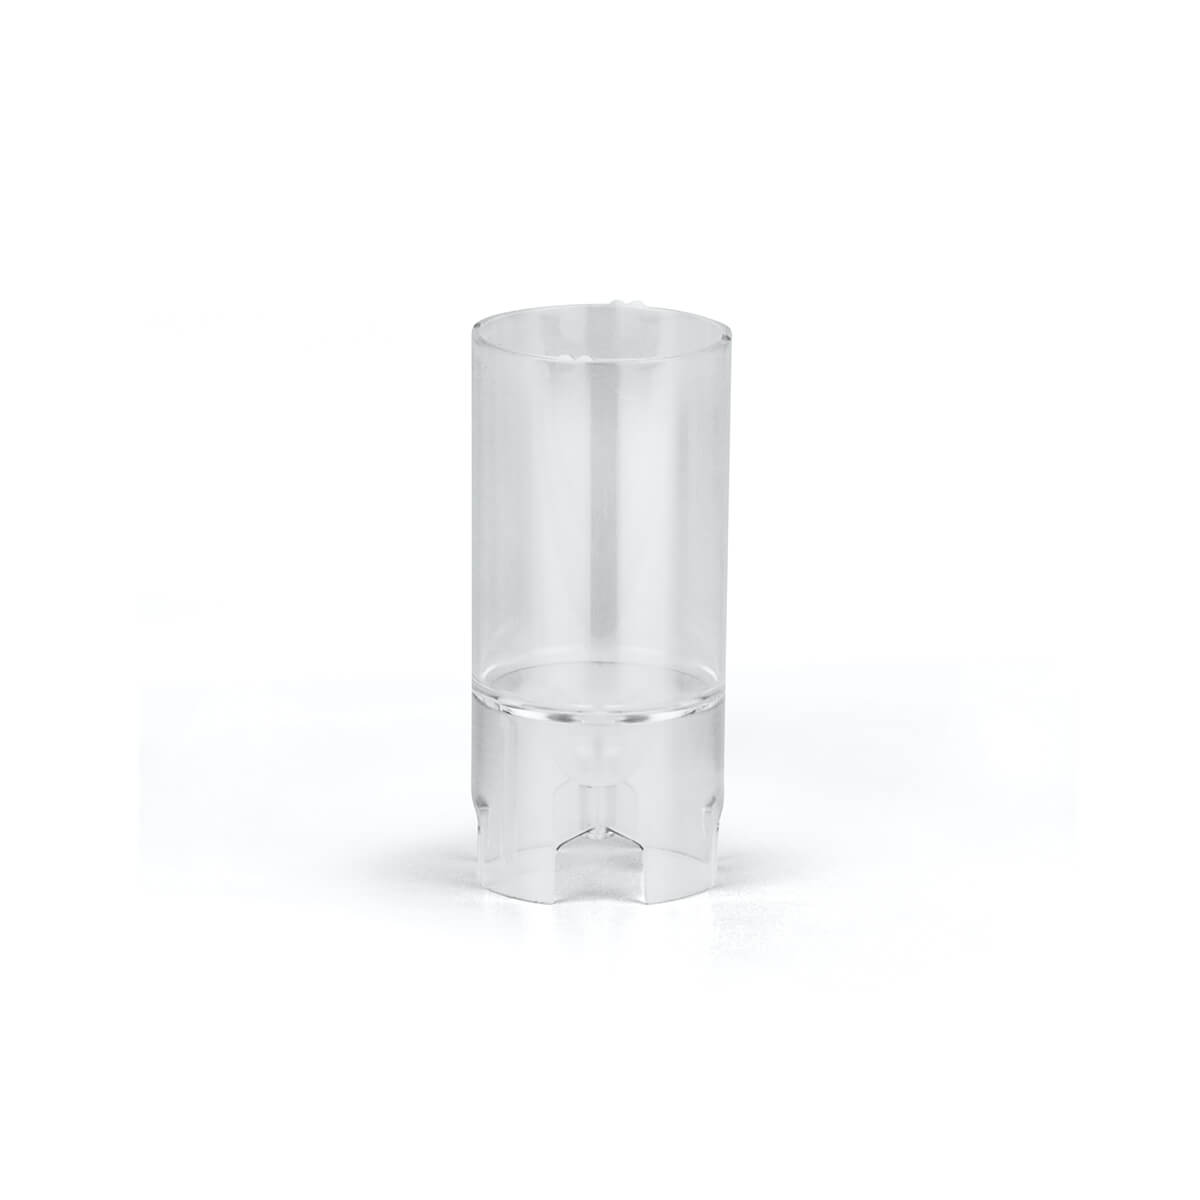 Giessform für Kerzen - Zylinder 65/44 mm